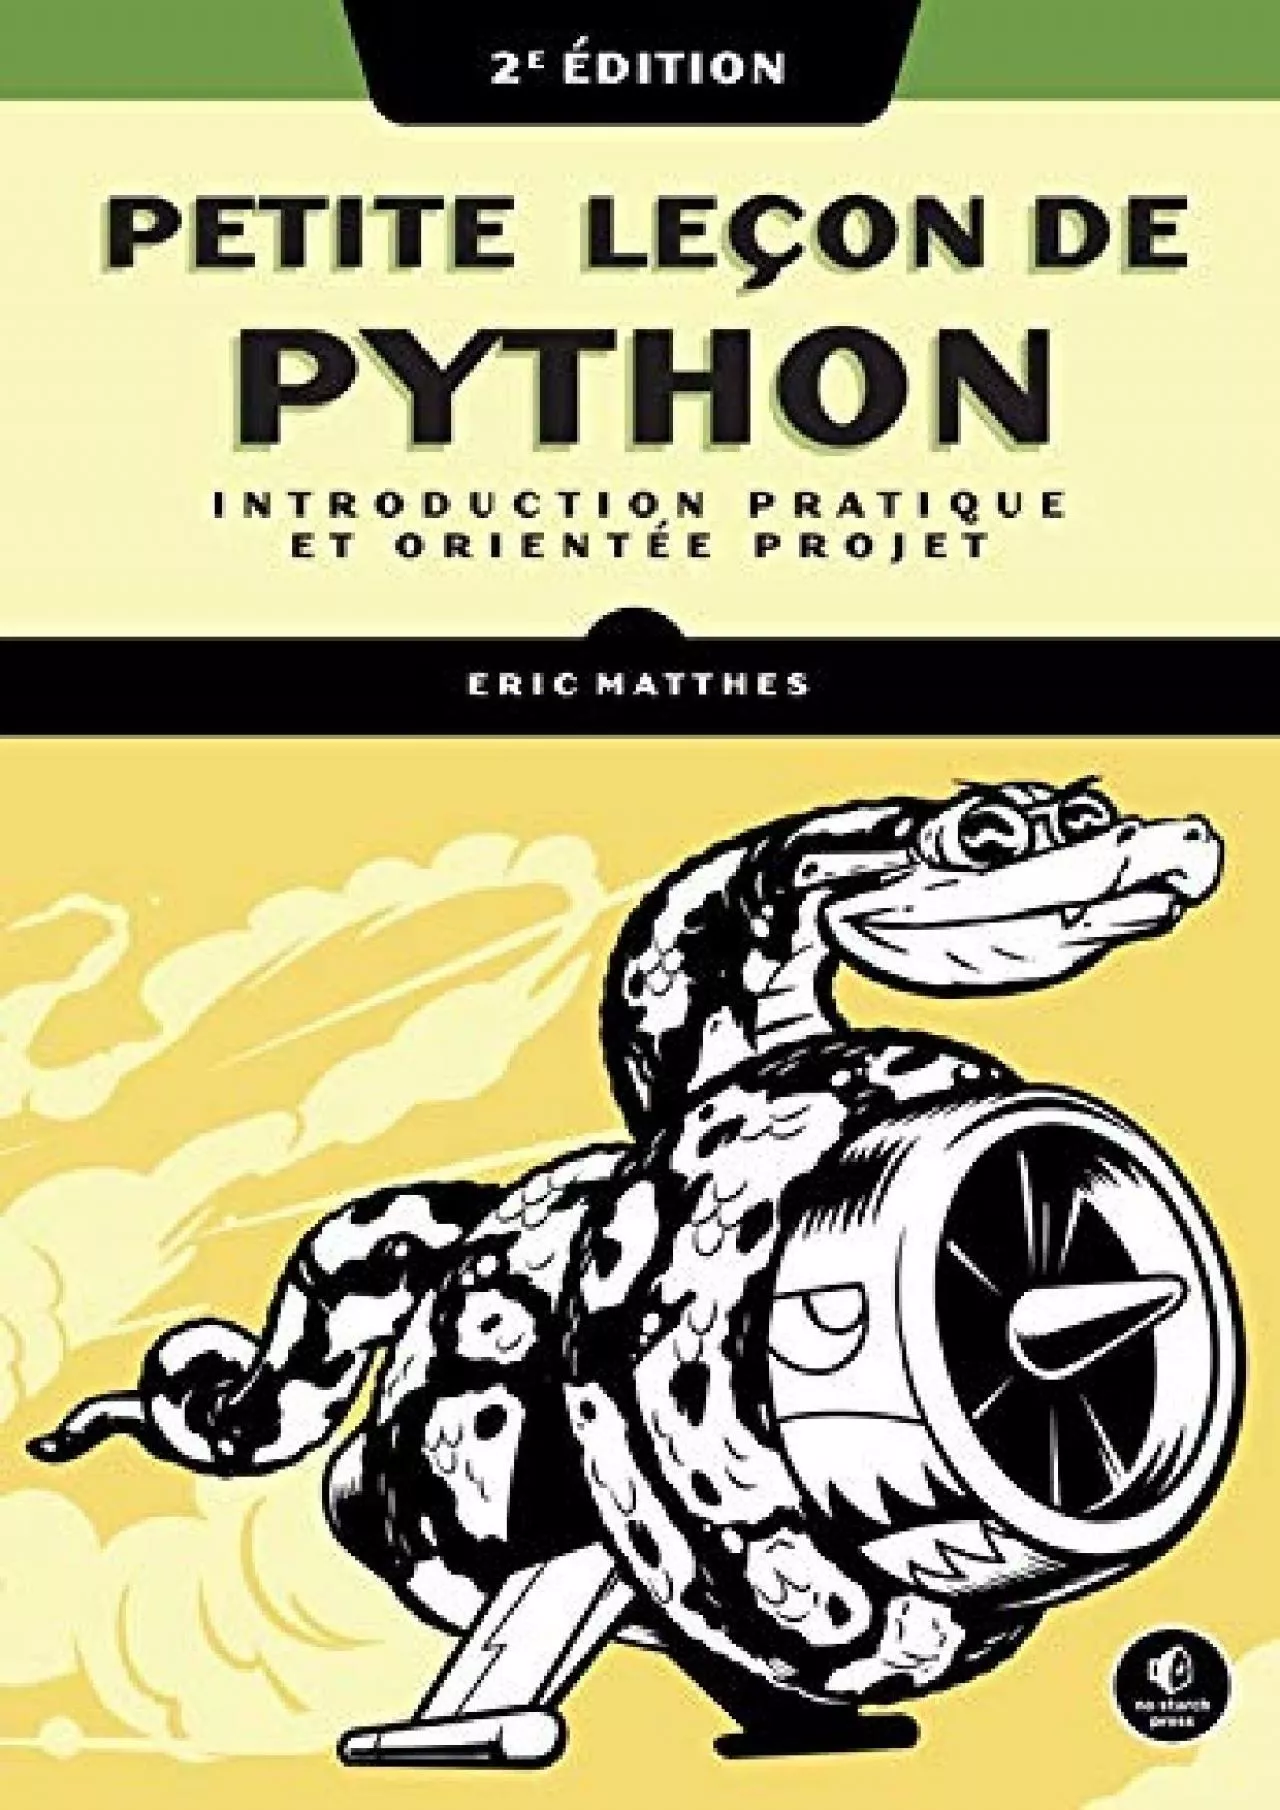 [READING BOOK]-Petite leçon de Python Introduction pratique et orientée projet (French